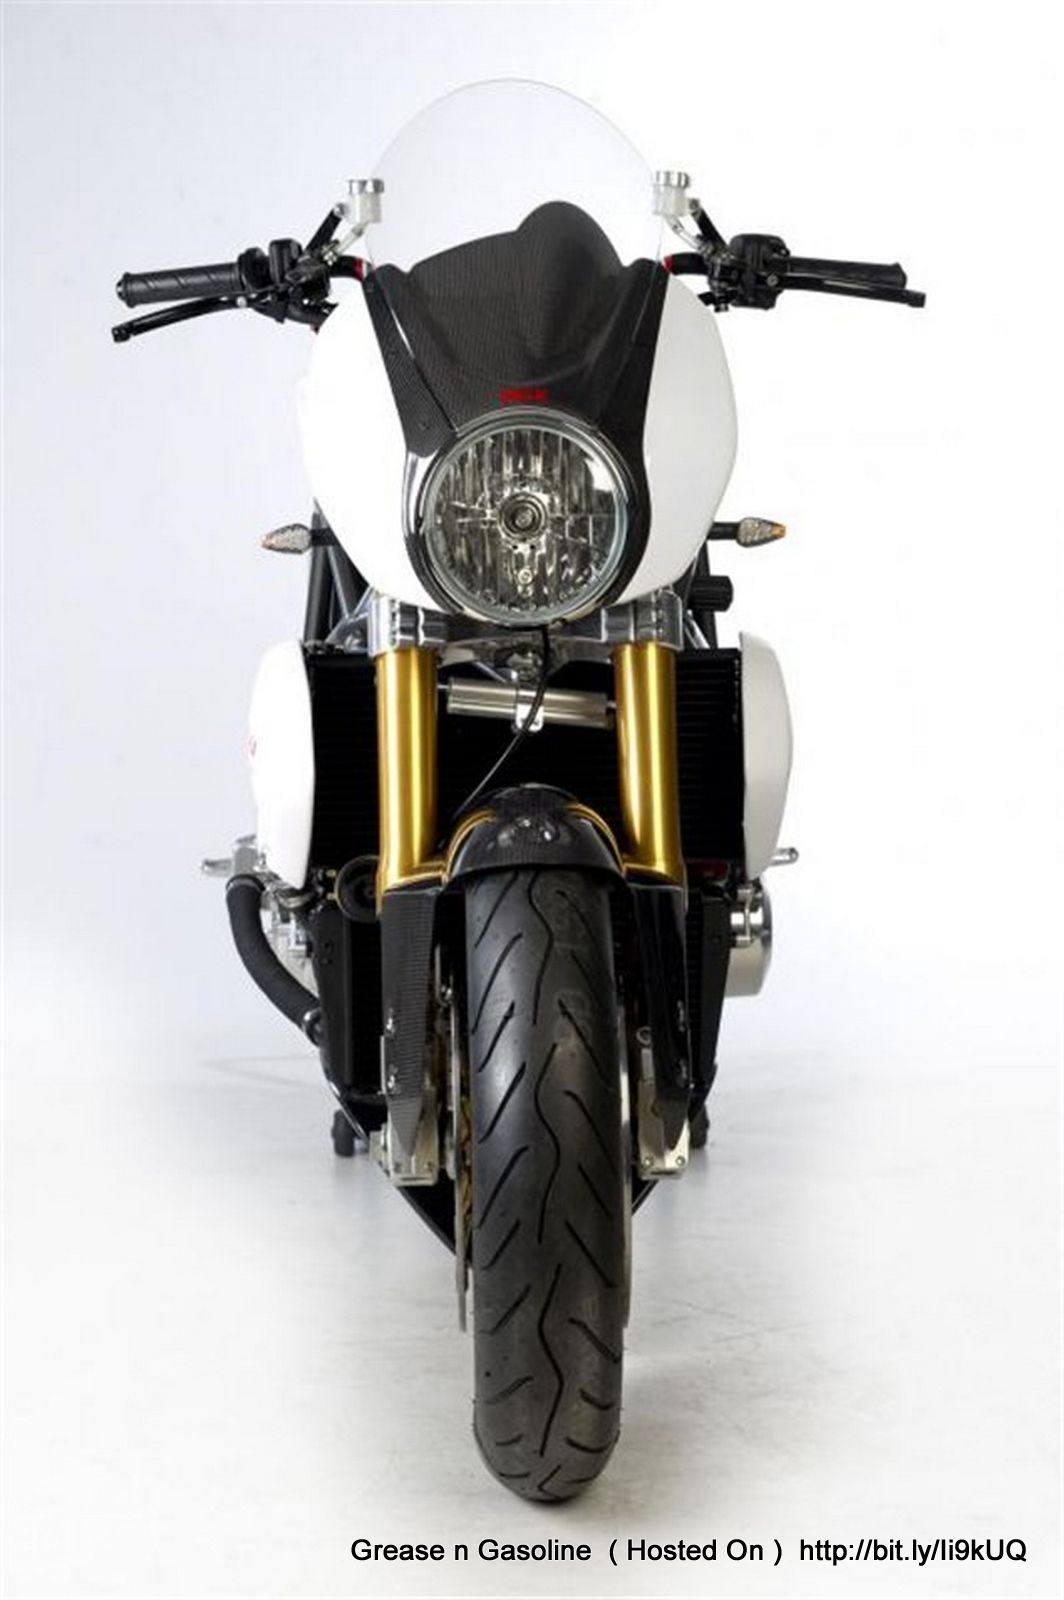 http://3.bp.blogspot.com/-RQ3r60uARwk/T6U2WJ47nNI/AAAAAAAATEg/gyxMp-maAk0/s1600/Midalu-FGR-2500-V6-Revolutionary-Naked-Bike-front-design-view-5.jpg